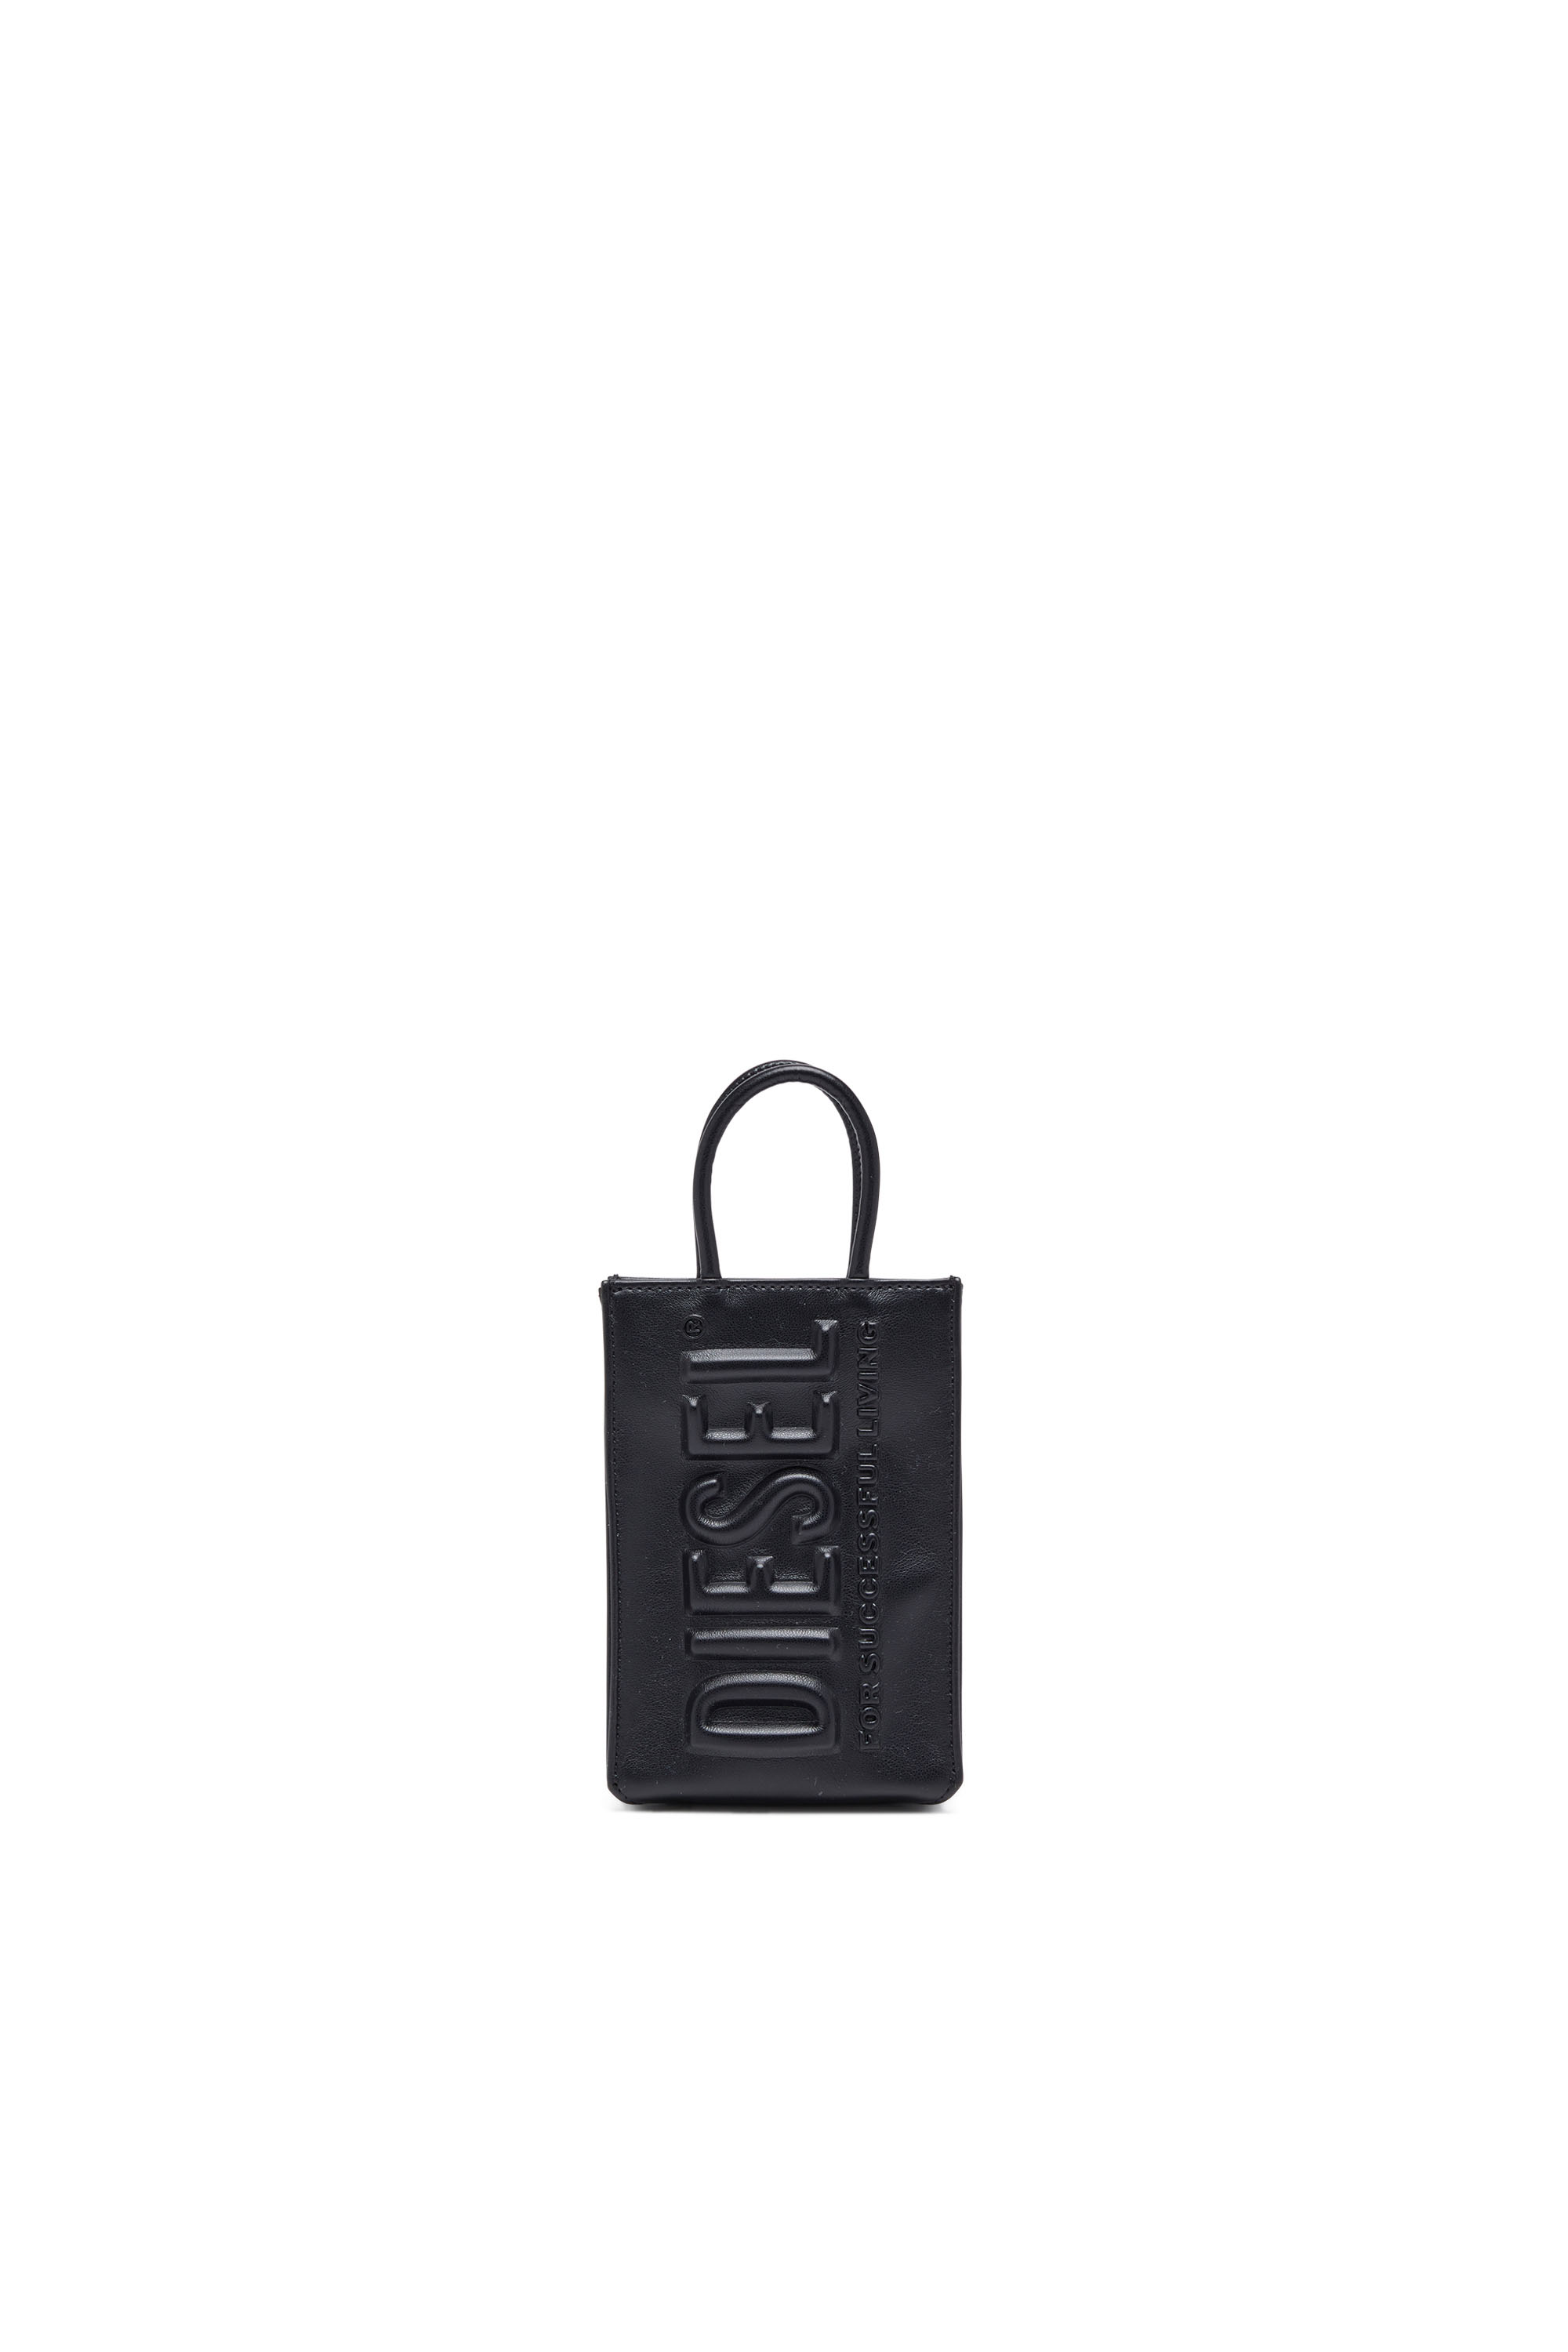 Diesel - DSL 3D SHOPPER MINI X, Mixte Dsl 3D Mini -Petit sac tote en PU avec logo embossé in Noir - Image 1